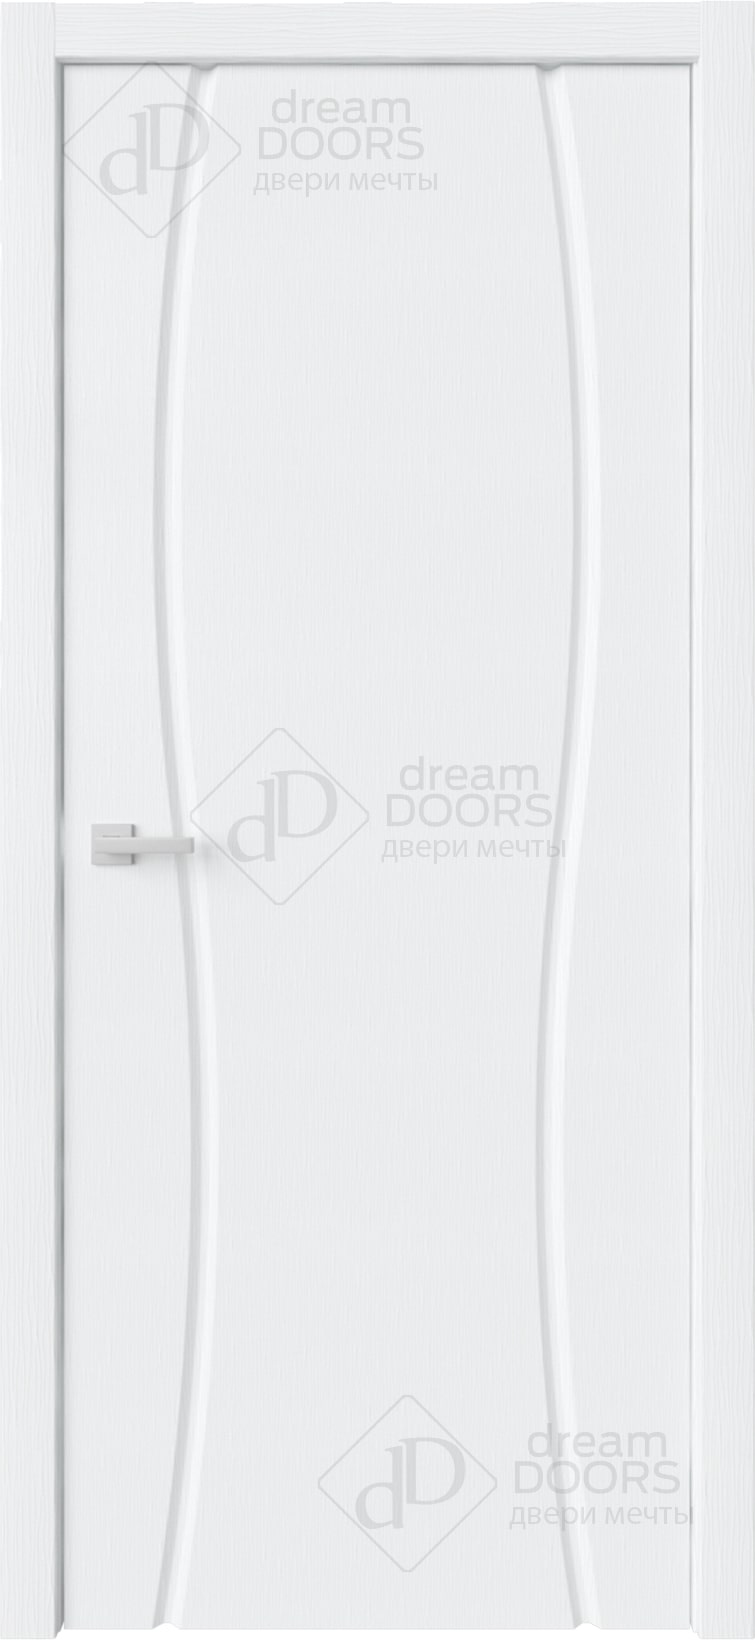 Dream Doors Межкомнатная дверь Сириус полное ДГ, арт. 20090 - фото №6